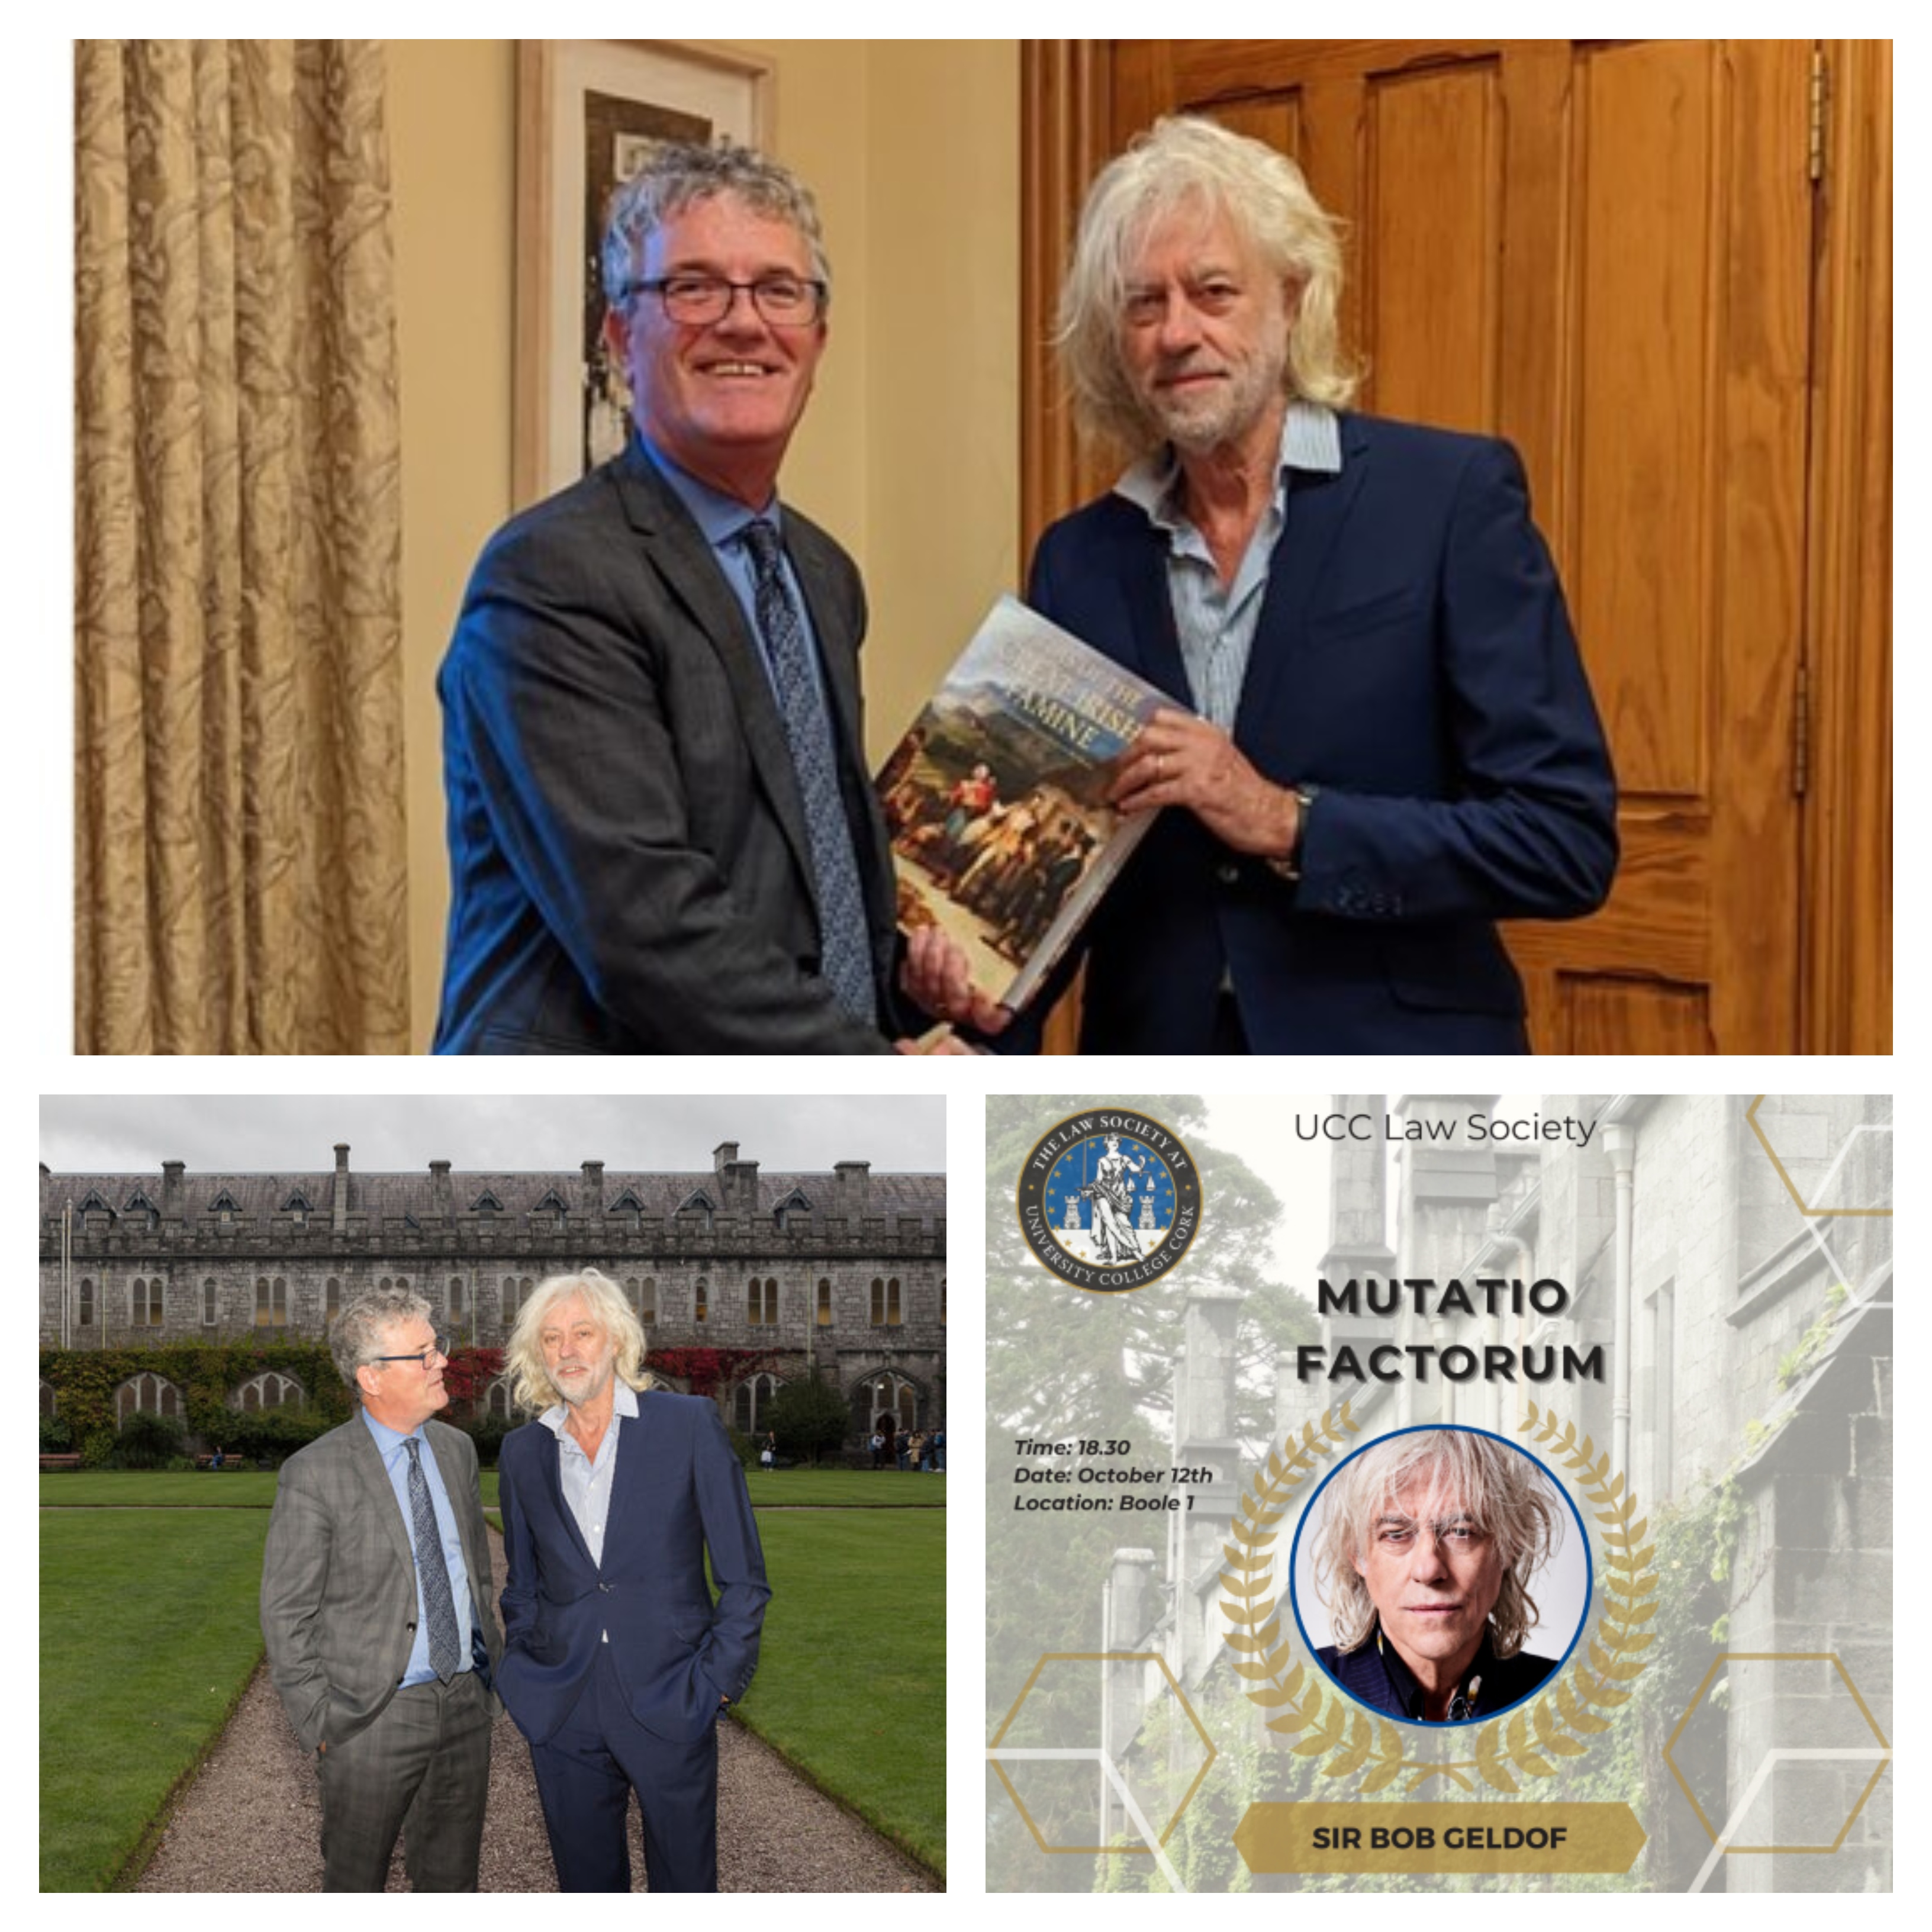 UCC Law Society’s Mutatio Factorem award presented to Sir Bob Geldof